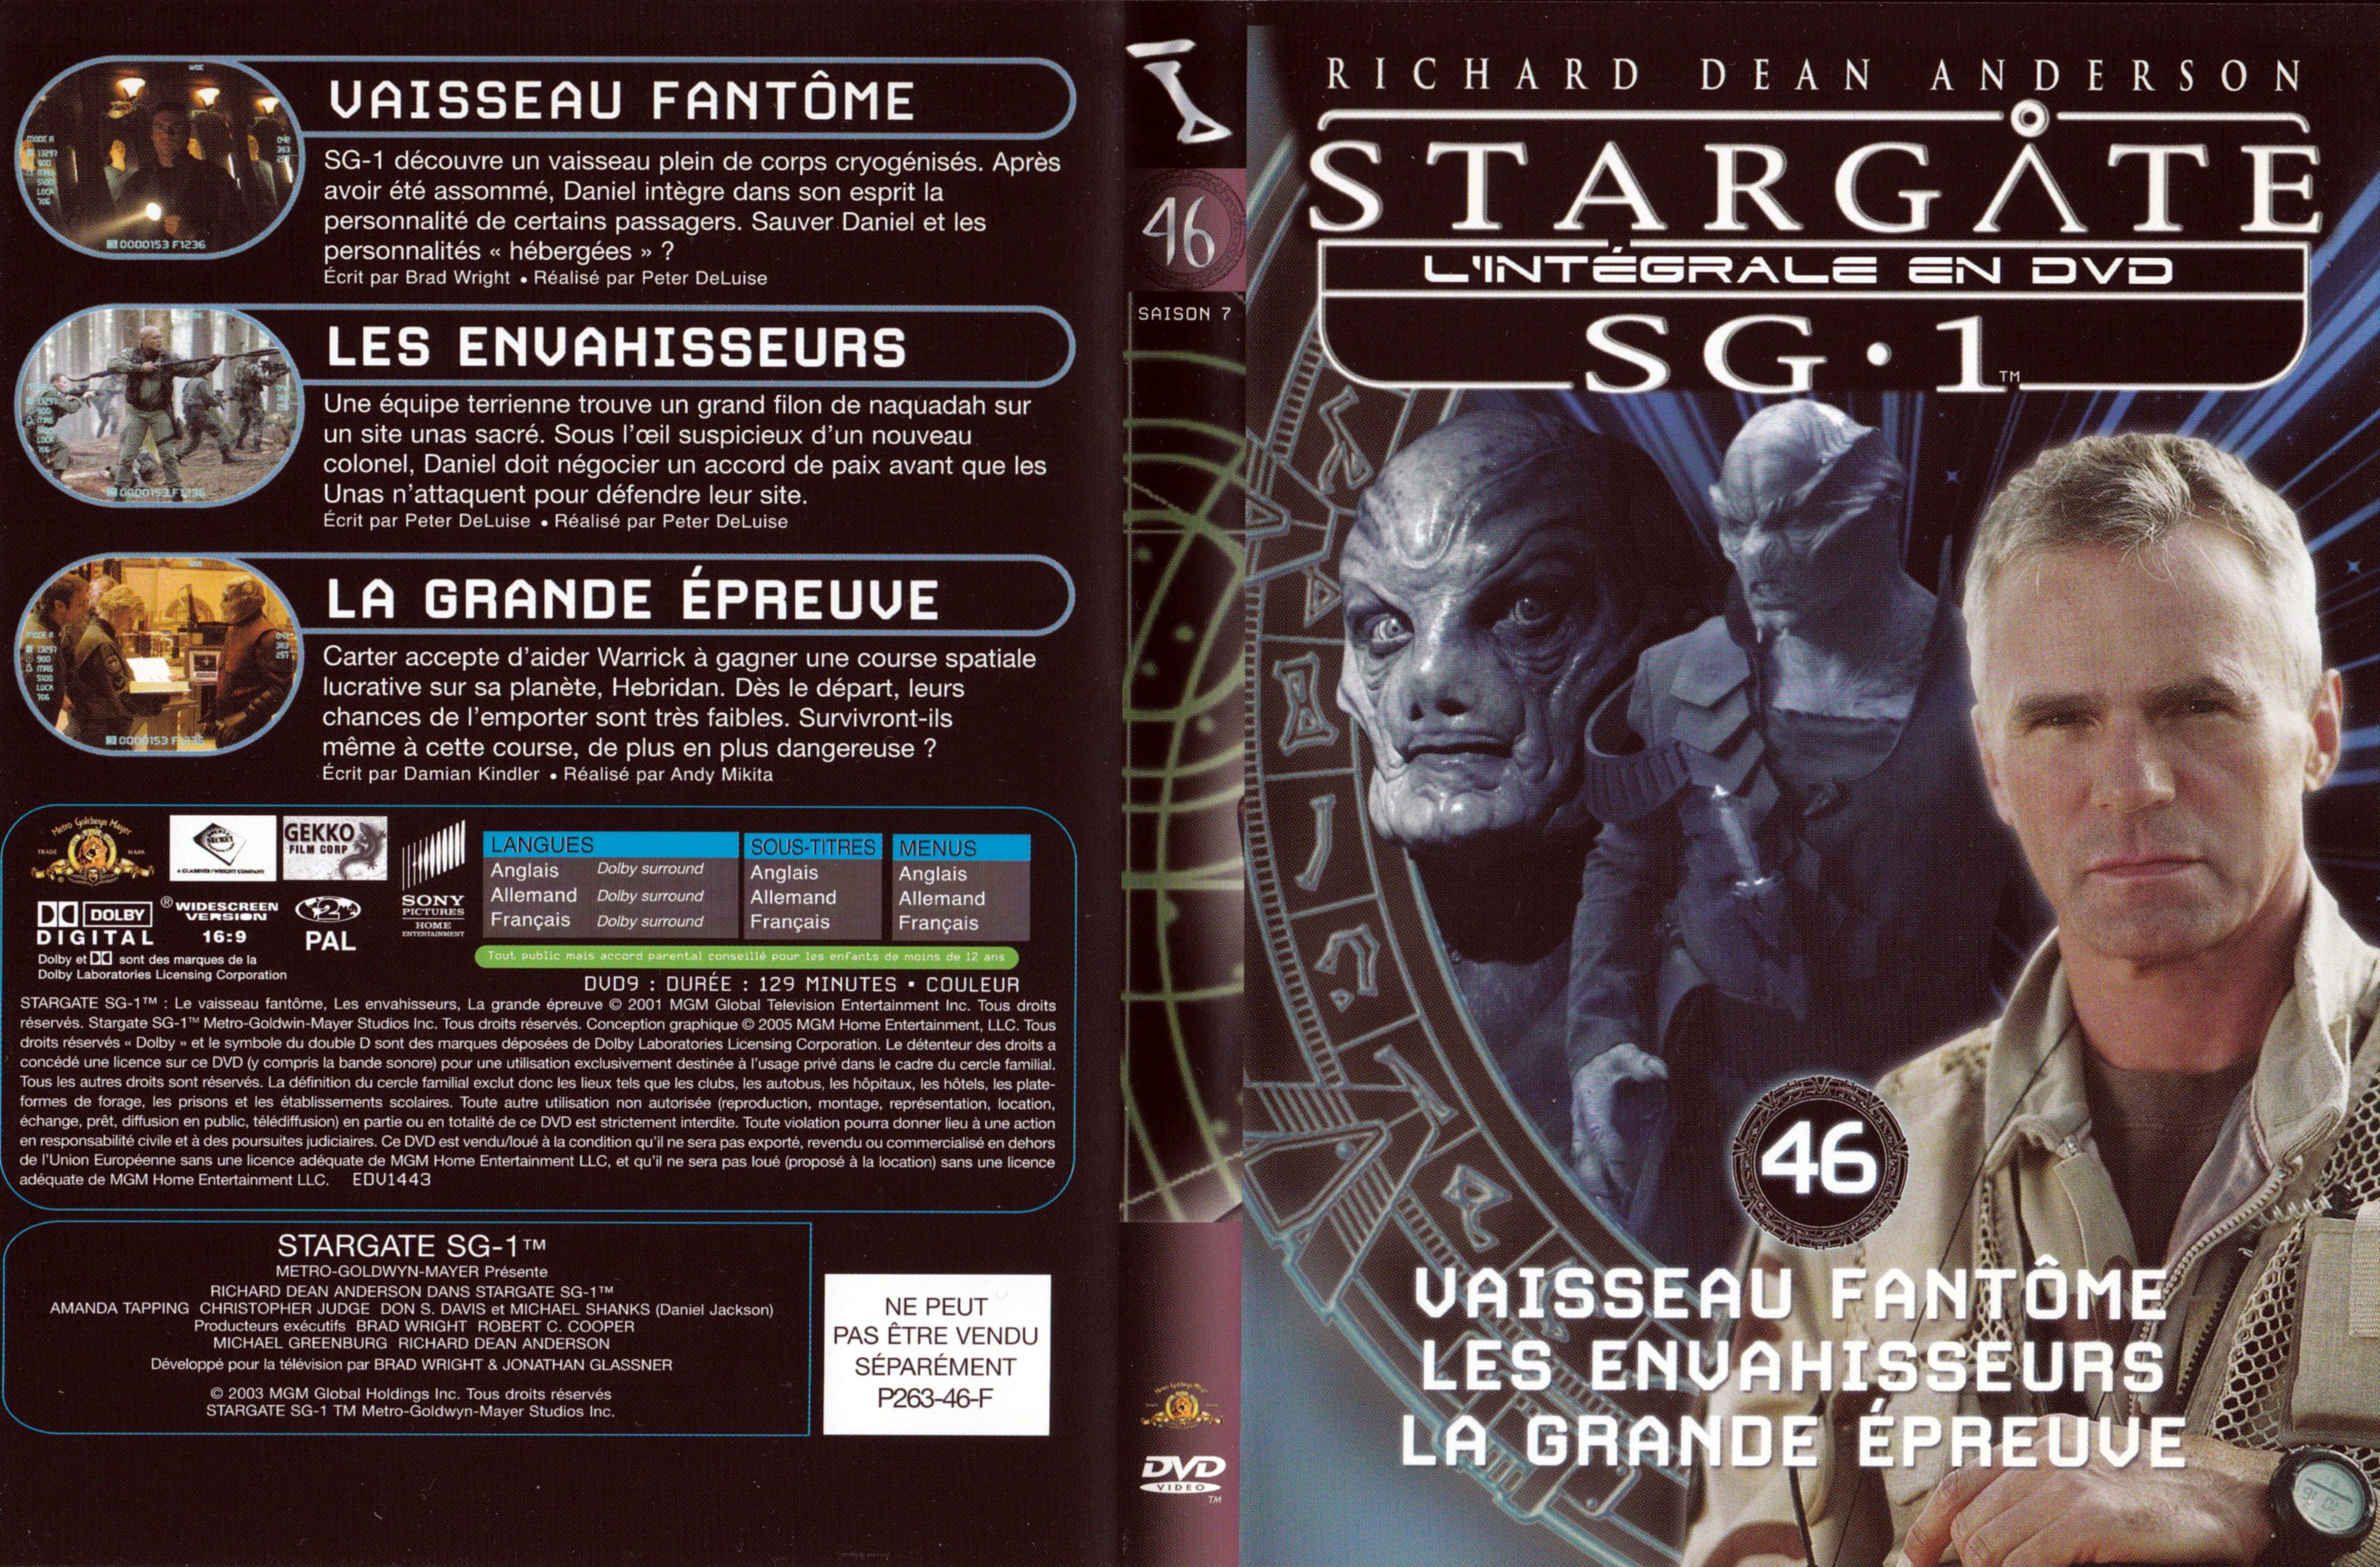 Jaquette DVD Stargate SG1 Intgrale Saison 7 vol 46